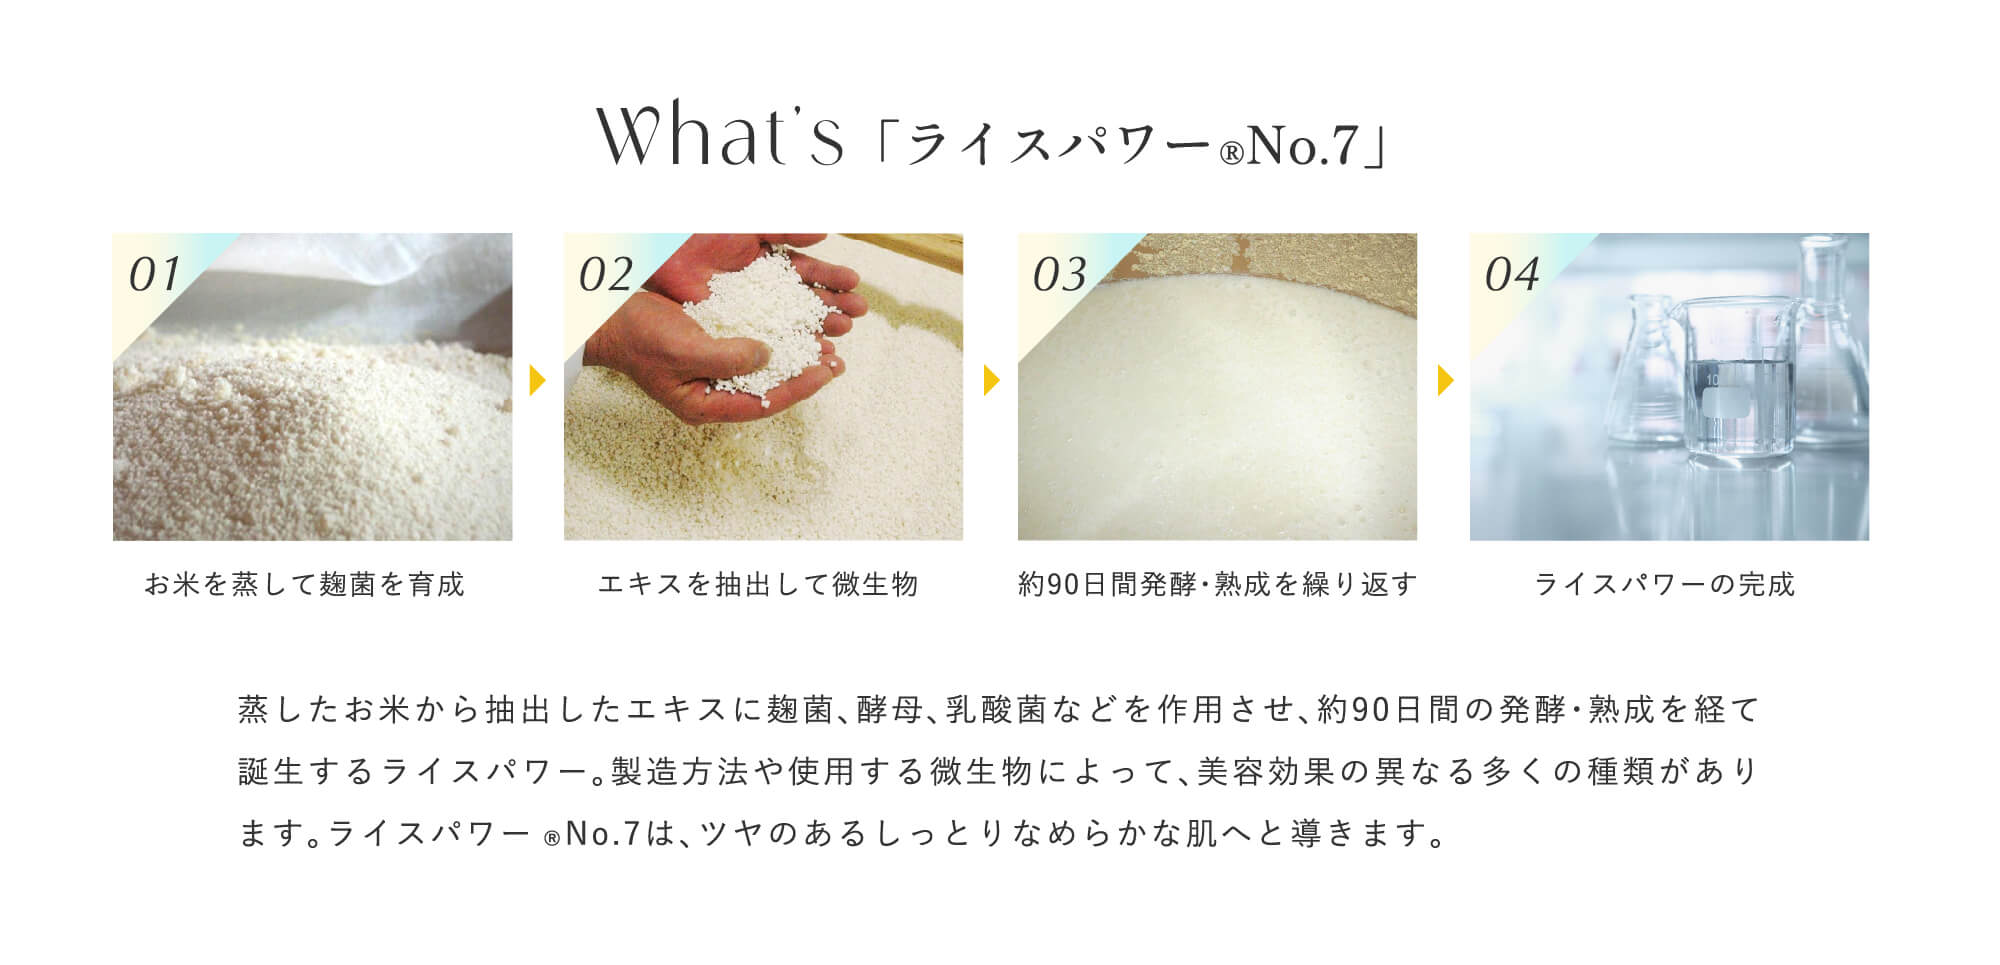 What's ライスパワー®No.7 蒸したお米から抽出したエキスに麹菌、酵母、乳酸菌などを作用させ、約90日間の発酵・熟成を経て誕生するライスパワー。製造方法や使用する微生物によって、美容効果の異なる多くの種類があります。ライスパワー®No.7は、ツヤのあるしっとりなめらかな肌へと導きます。